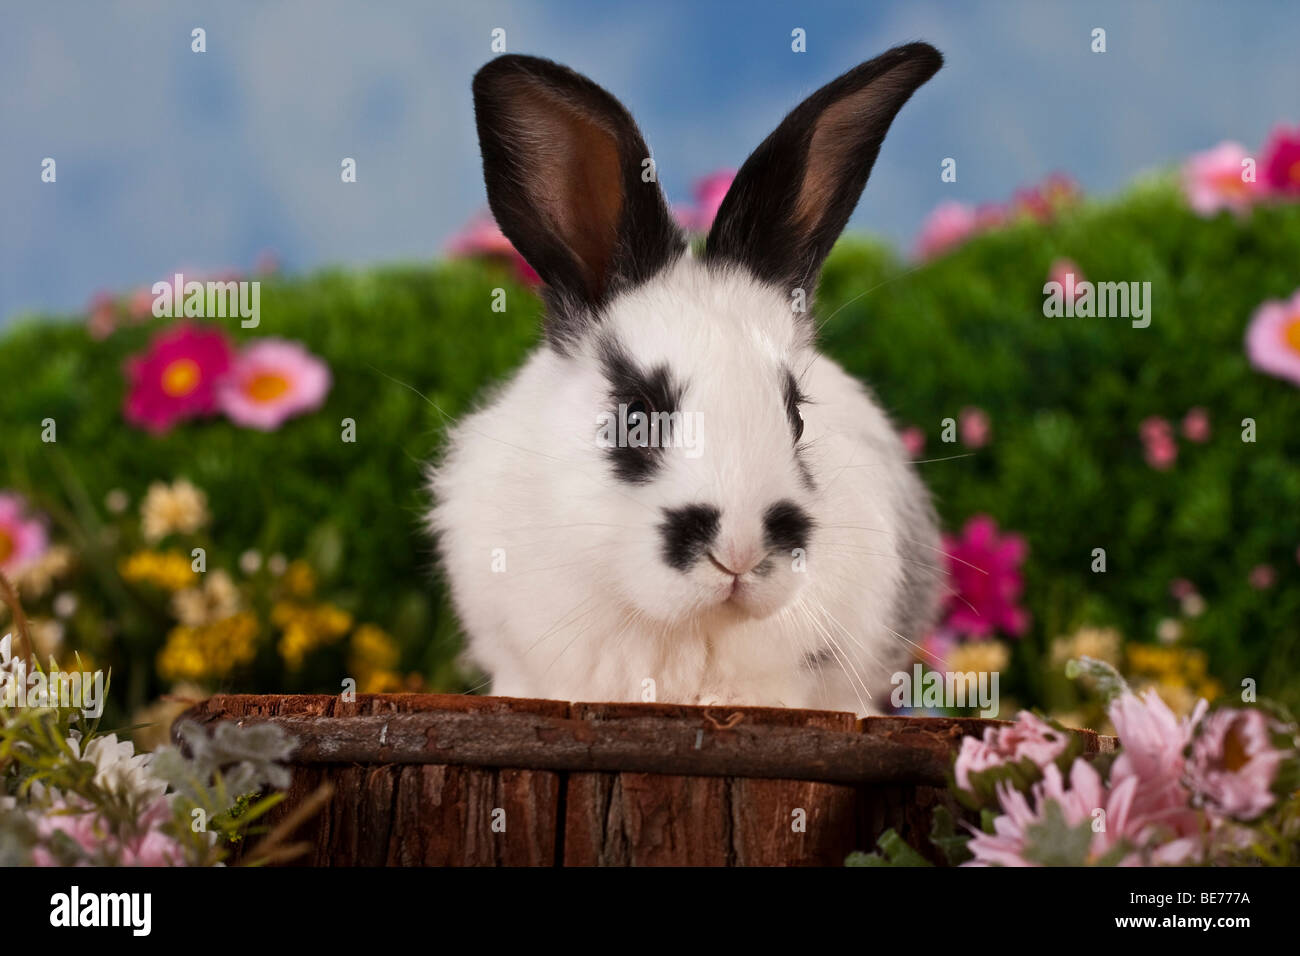 Schwarz-weiß-Kaninchen, umgeben von Blumen, auf einem Hocker sitzend gesichtet Stockfoto